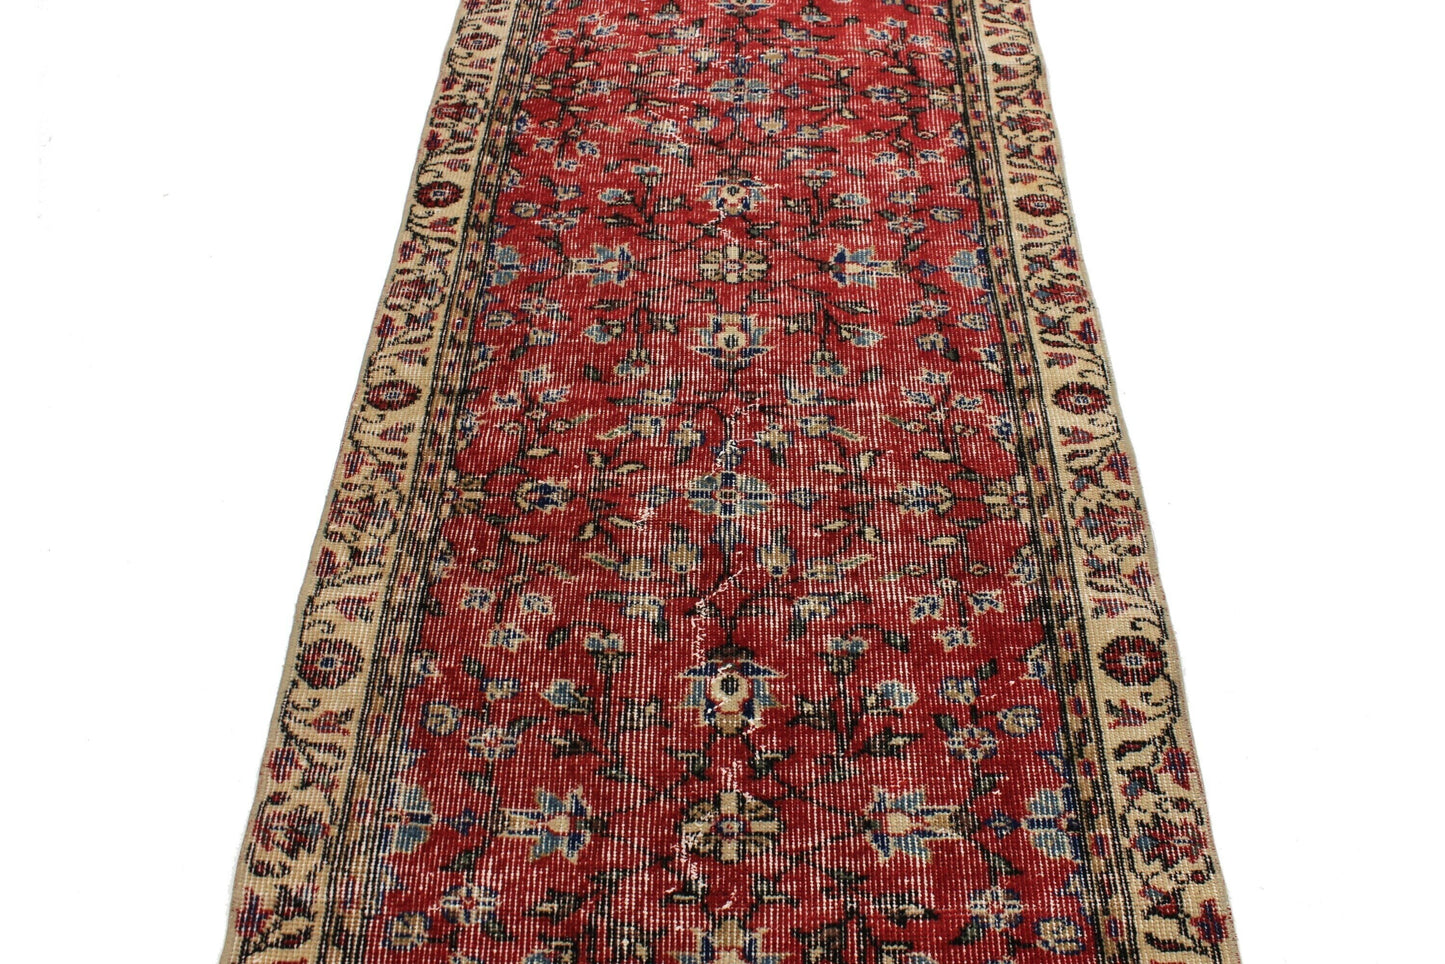 Runner Rug 3x10, Turkish Runner Red ,Oushak Runner Floral, Vintage Handmade Carpet Runner, Vintage Turkish Rug Runner, Boho Decor, 2176